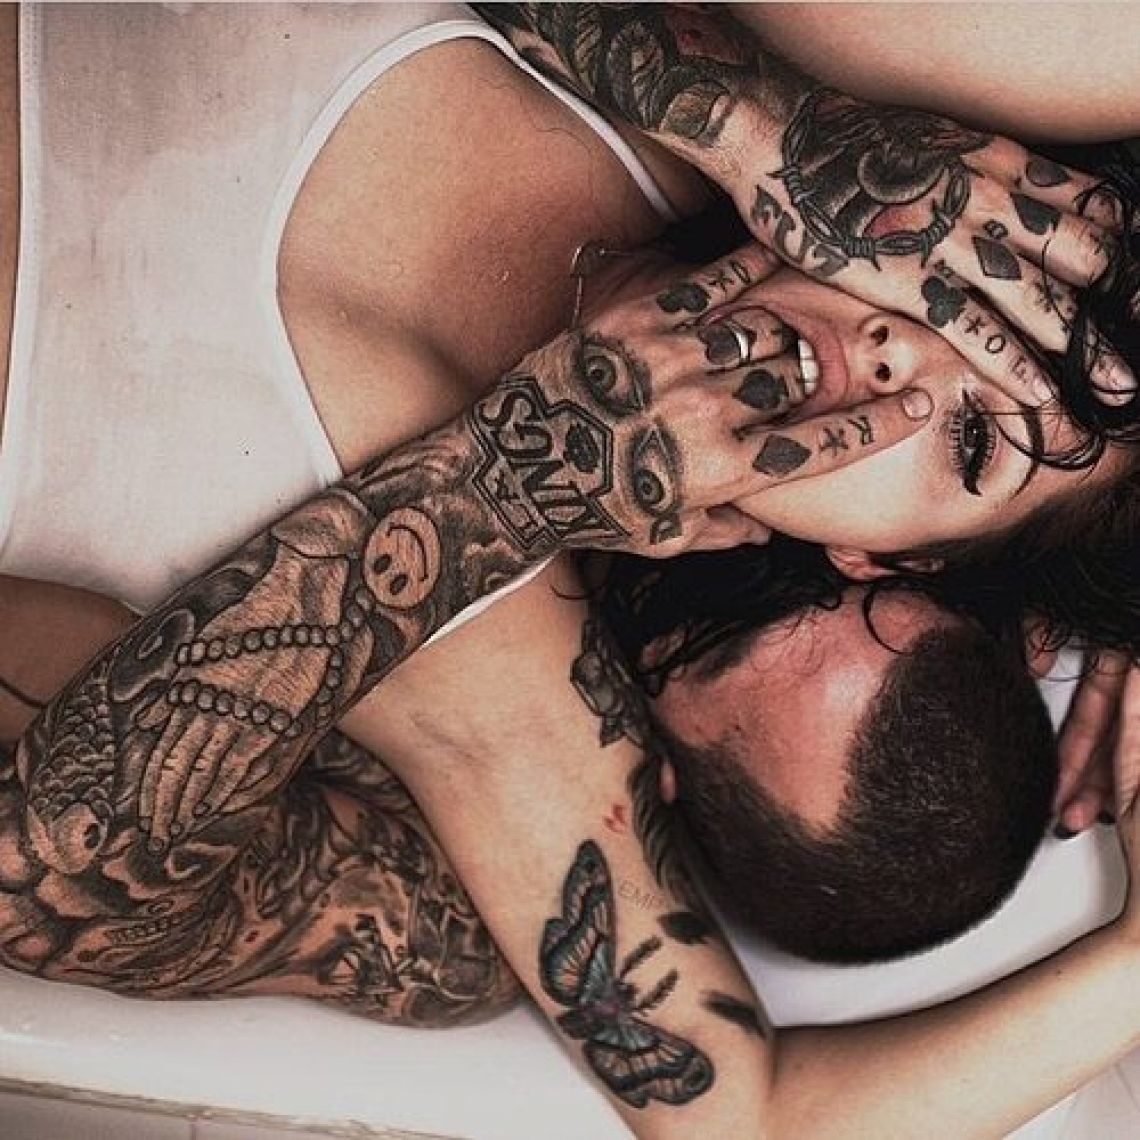 Дико татуированная баба занимается фантастическим сексом с партнером